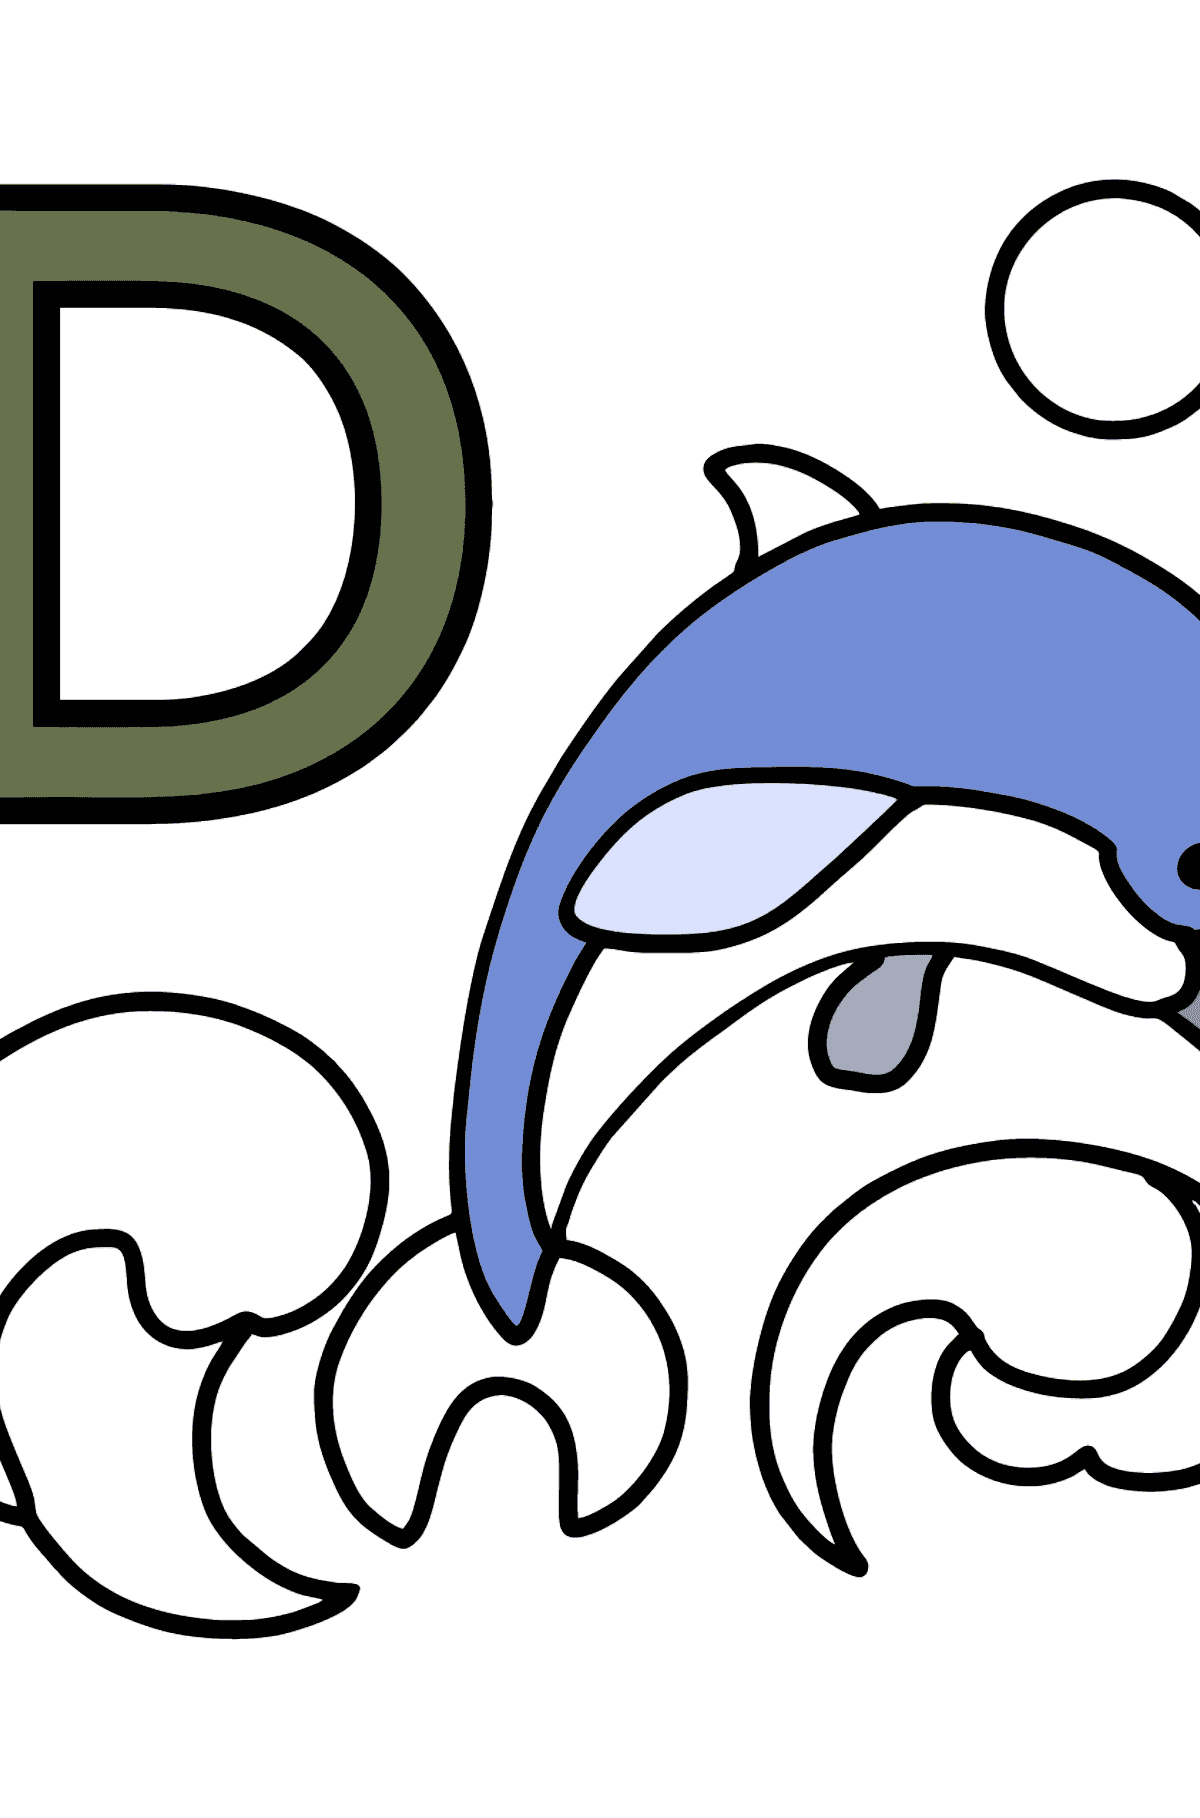 Раскраска Буква D испанского алфавита - DELFÍN - Картинки для Детей